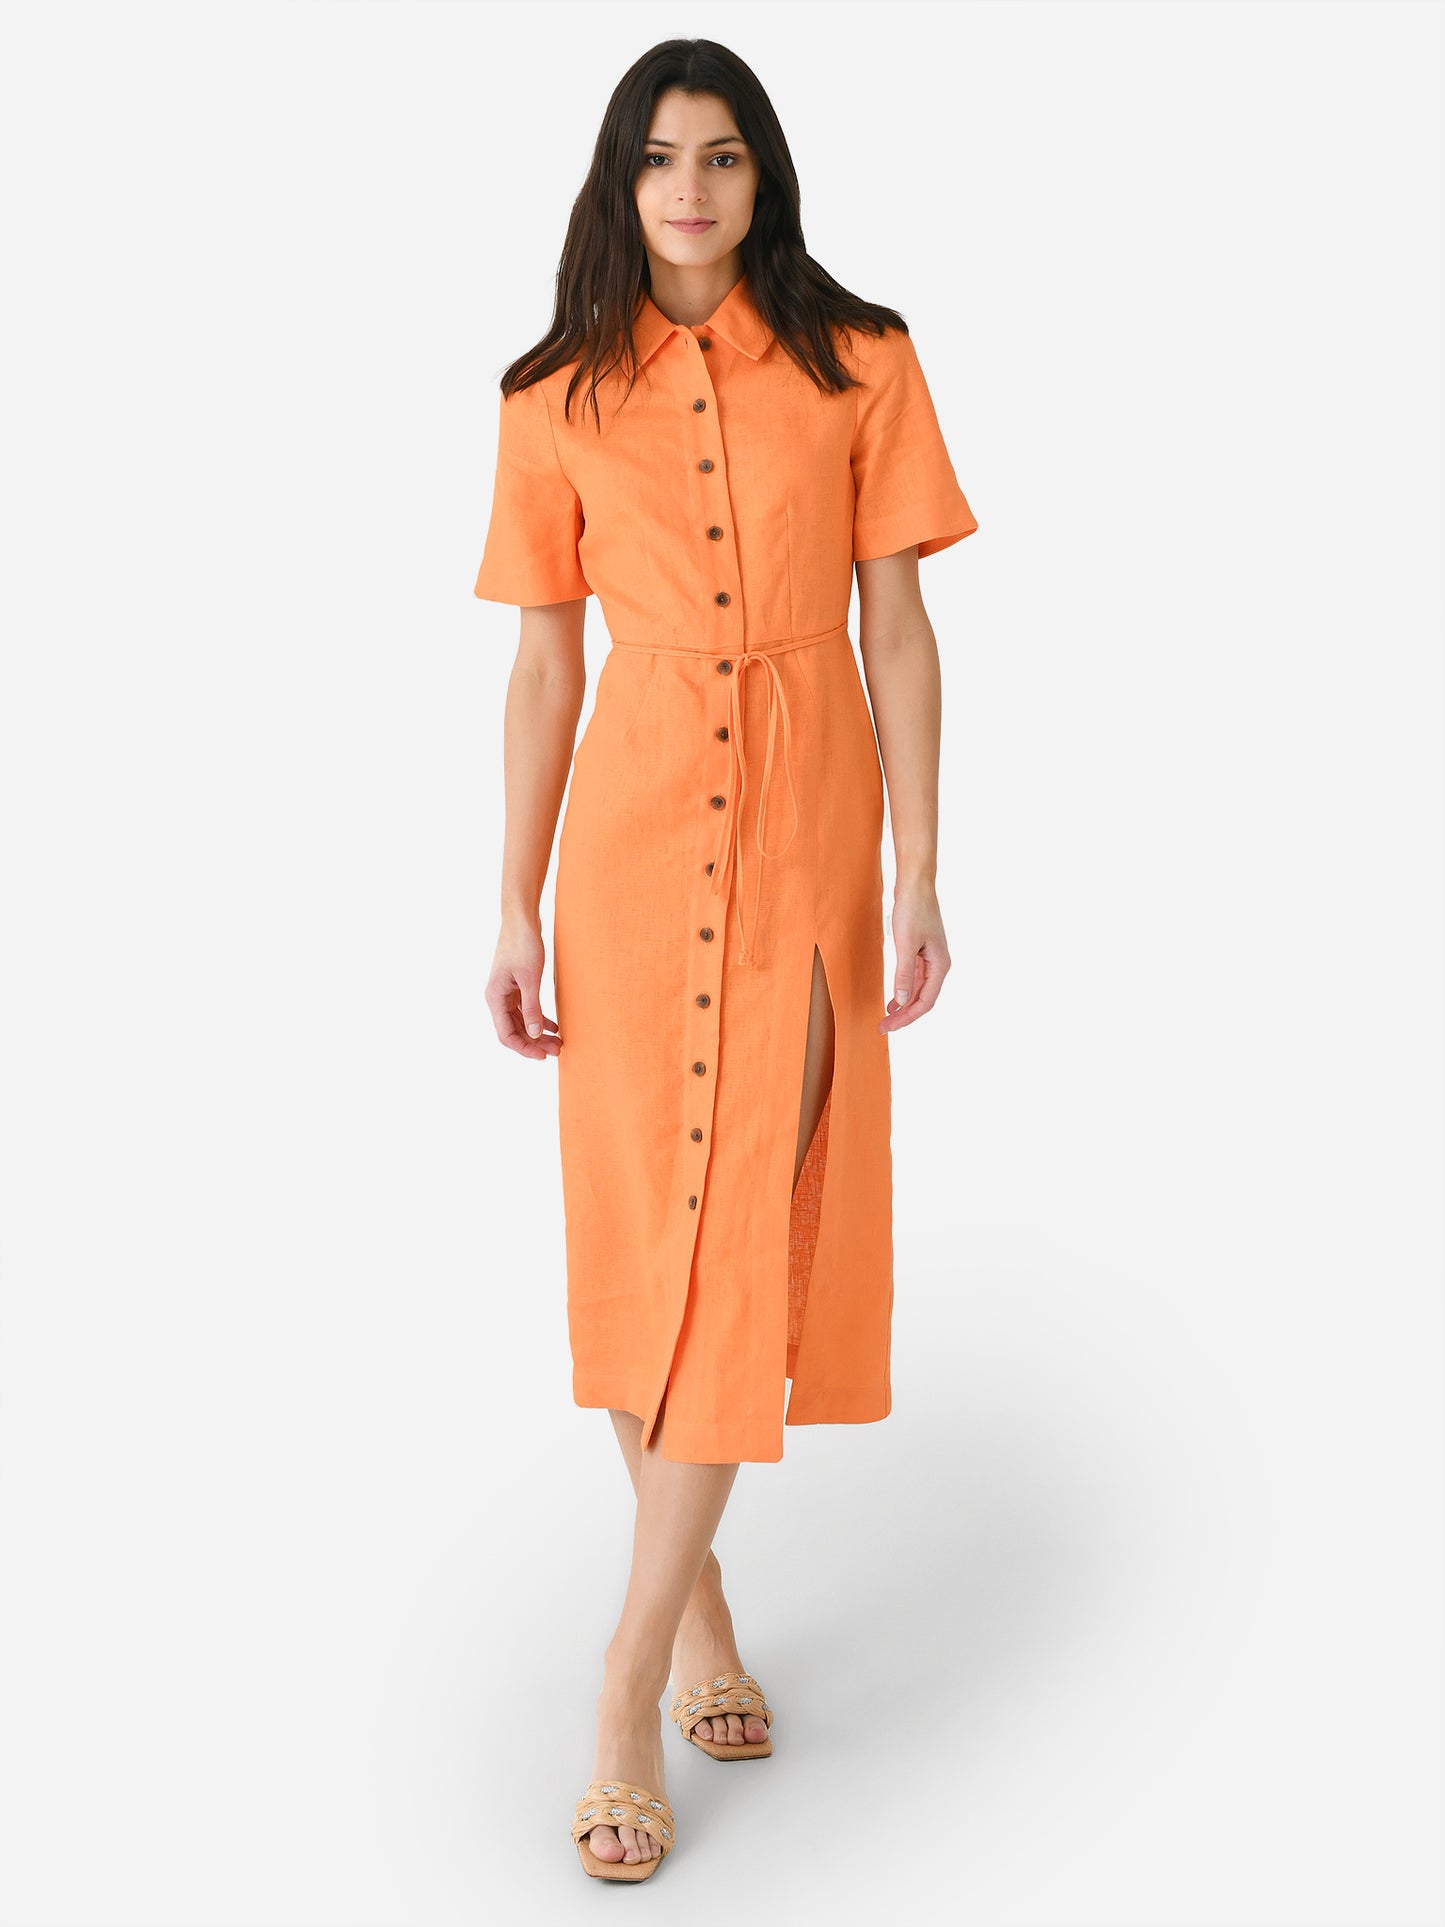 Matthew Bruch Women's Button-Up Midi Shirt Dress